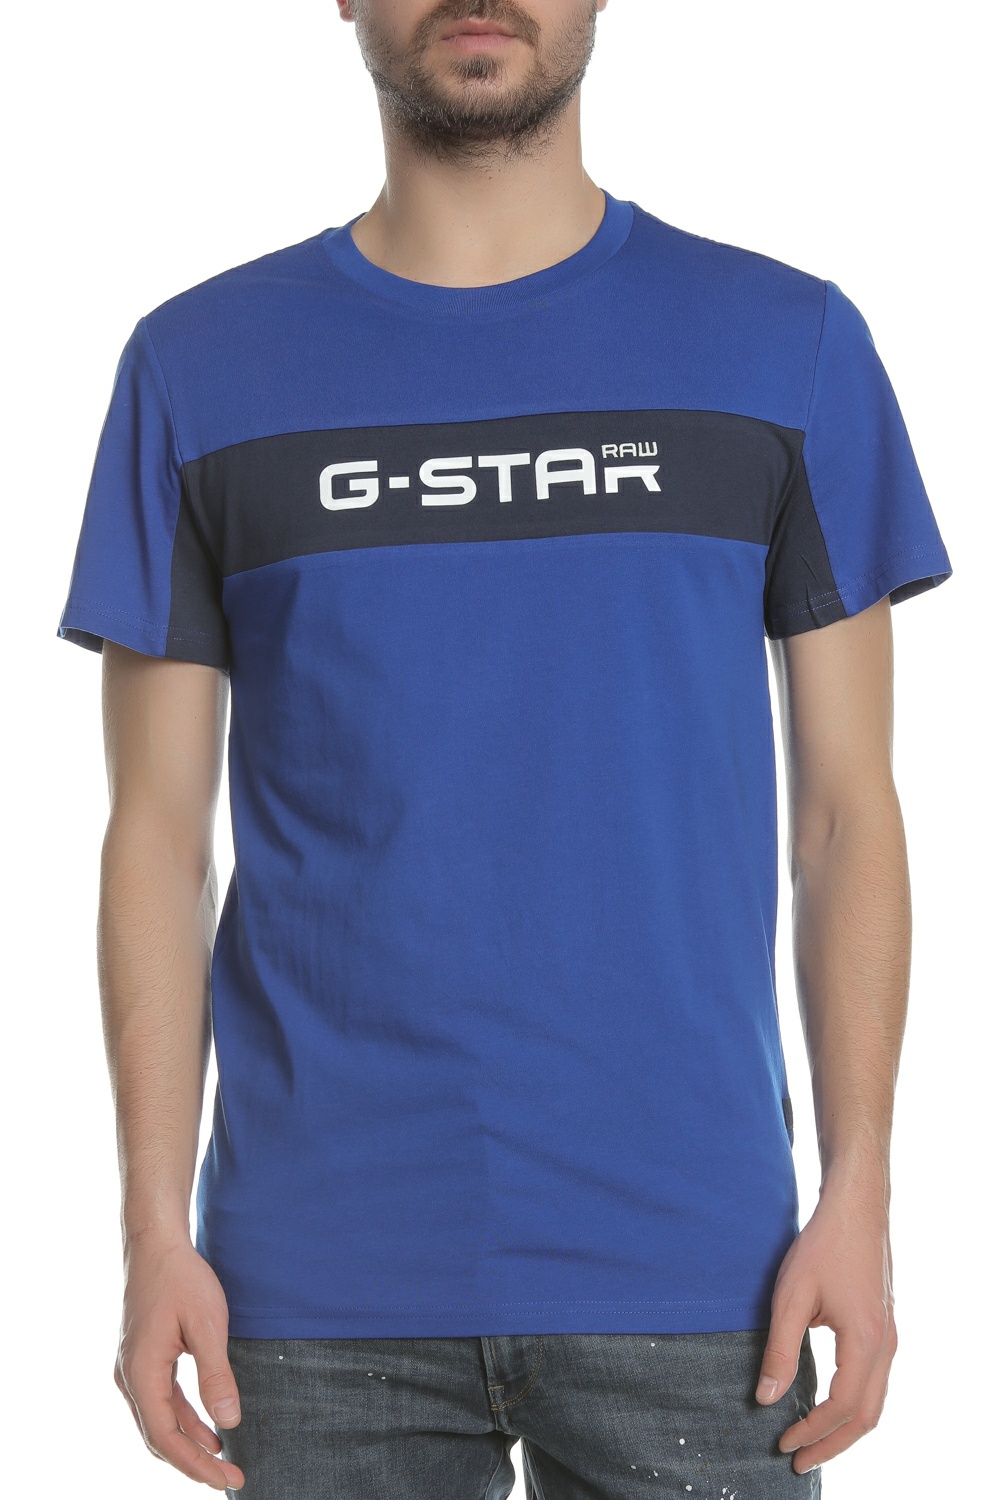 G-STAR RAW G-STAR - Ανδρική μπλούζα G-STAR μπλε